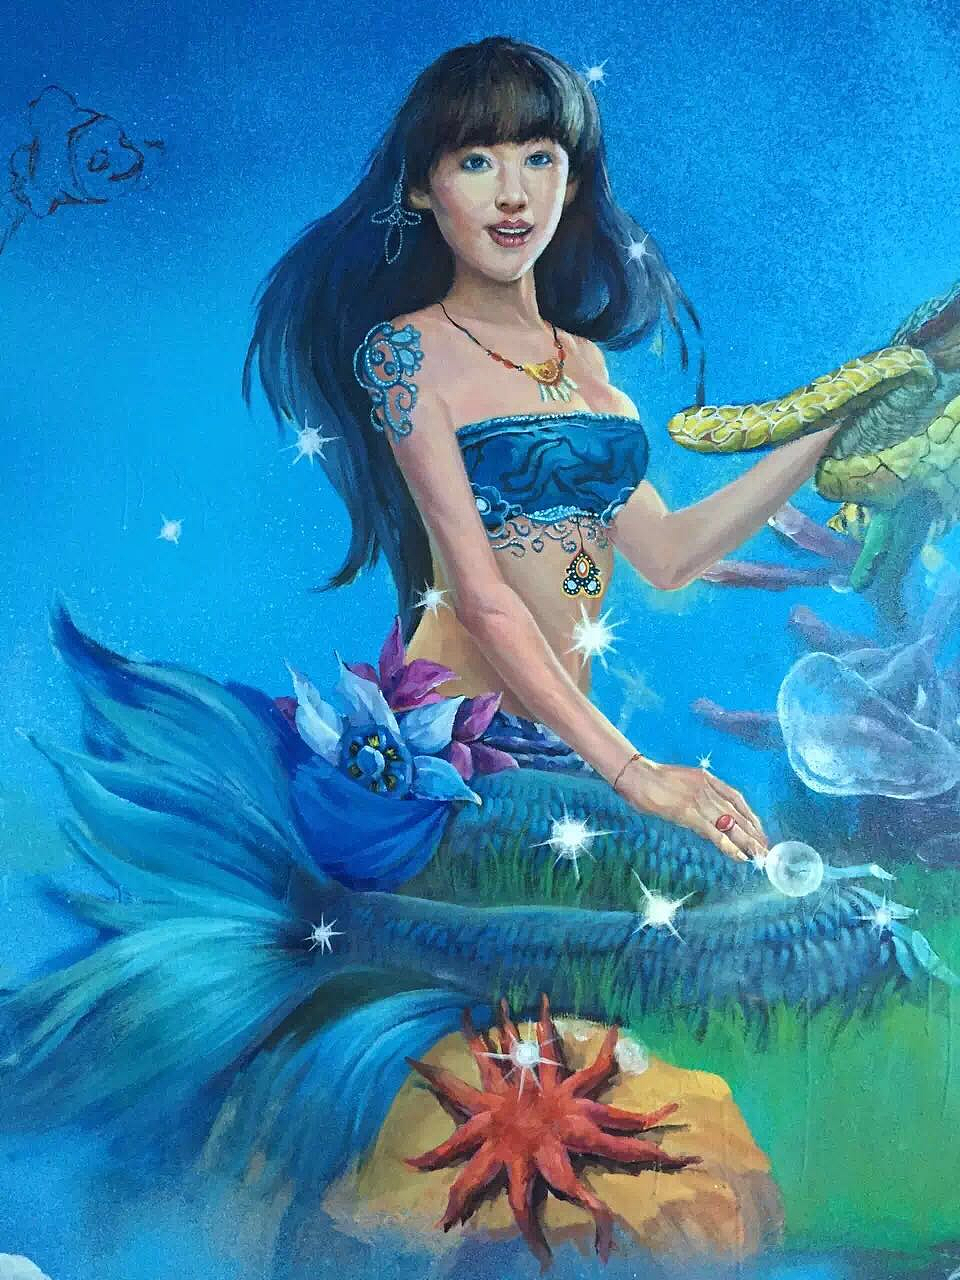 美人鱼-珠海创意墙绘|其他|墙绘/立体画|广州3d立体画